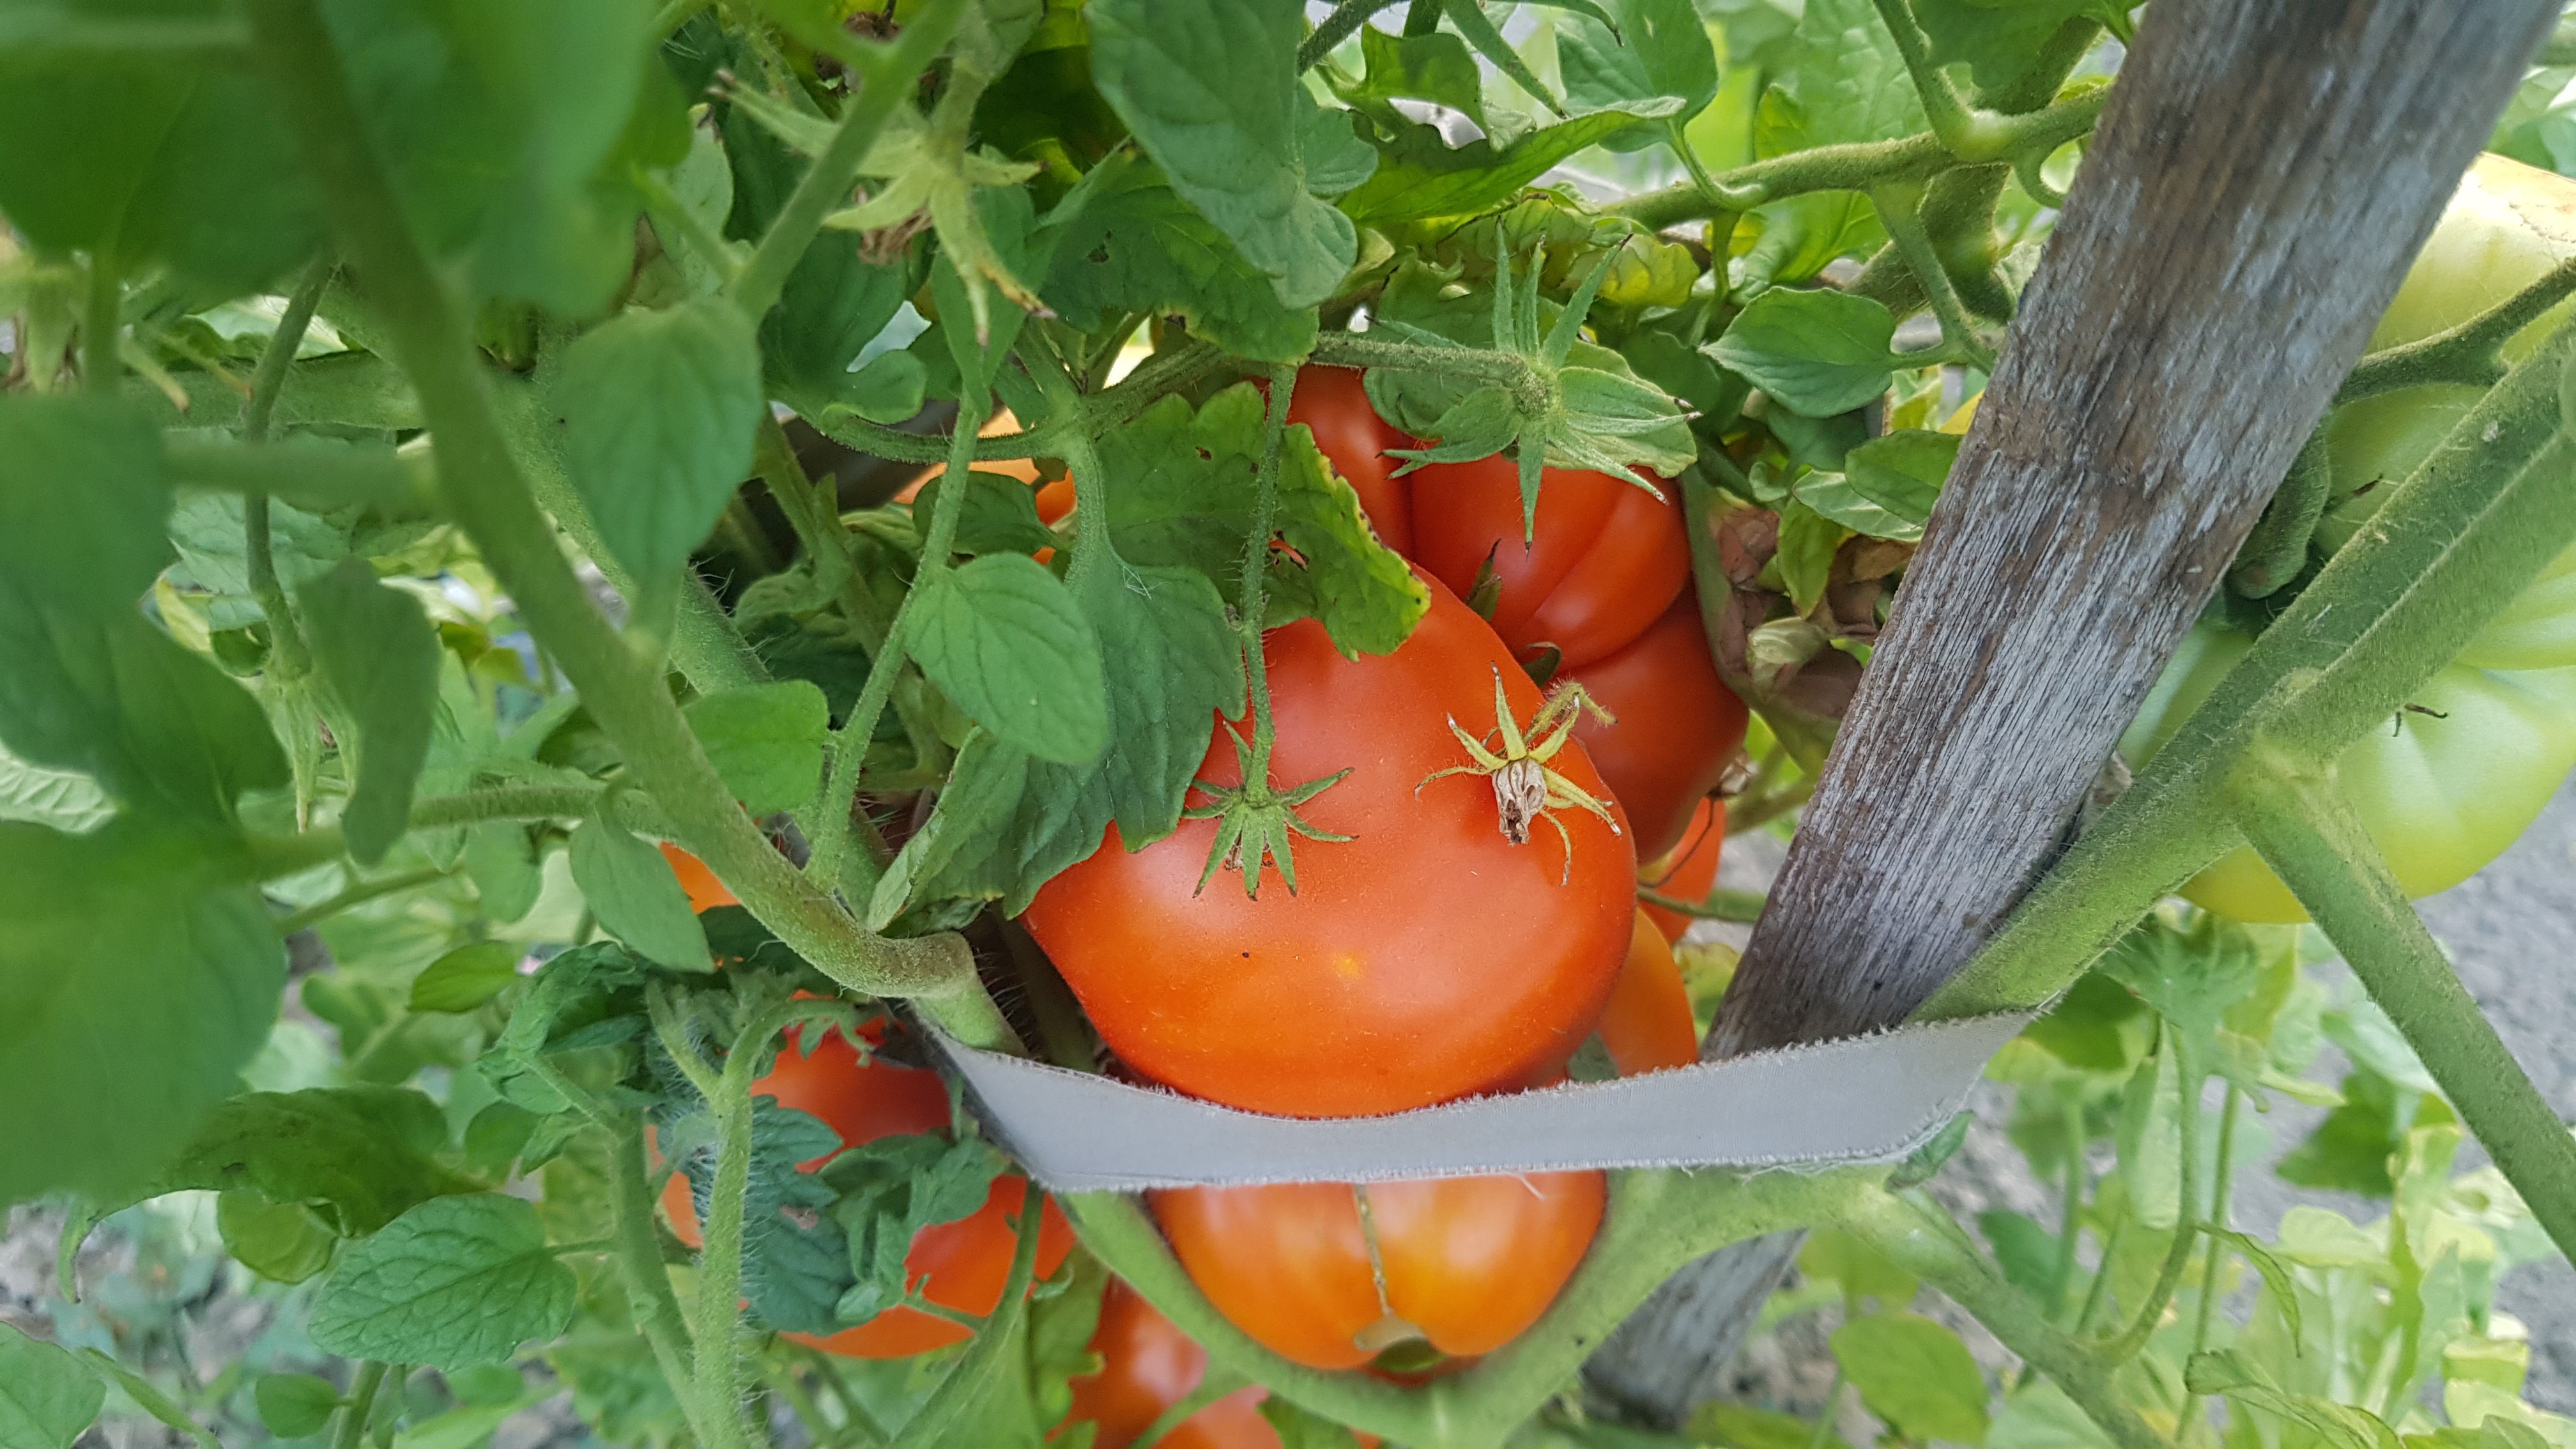 Coğrafi işaret tescilli maniye domatesi hasadı başladı!Coğrafi işaret tescilli maniye domatesi hasadı başladı!